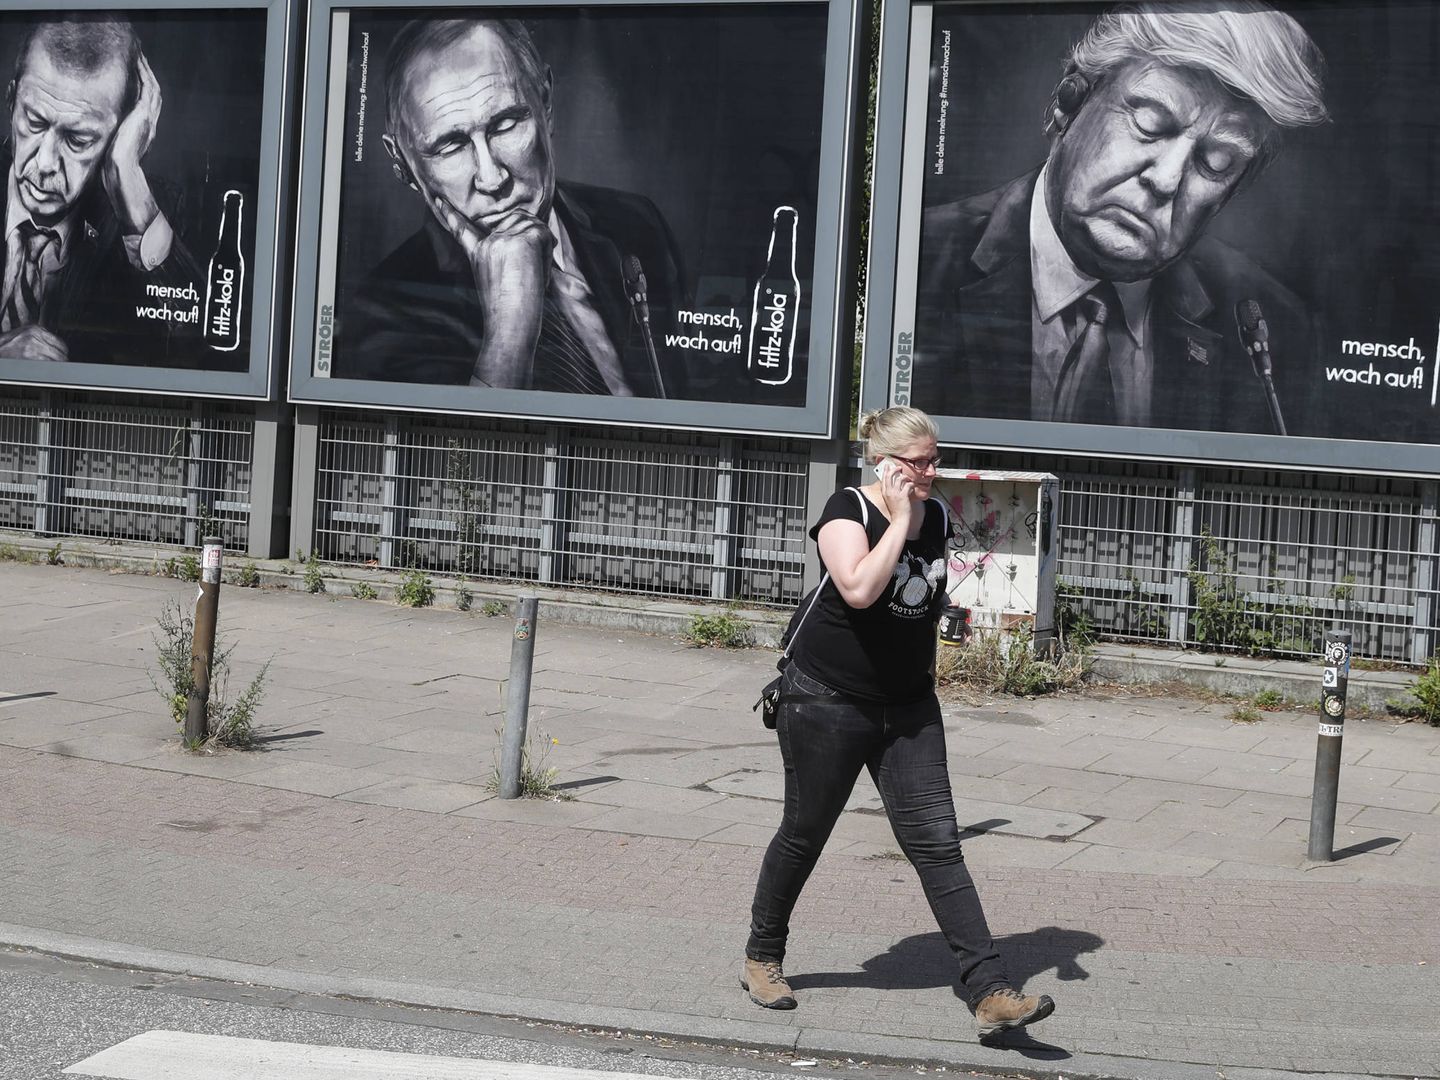 Una mujer pasa ante carteles que representan a Erdogan, Putin y Trump, en Hamburgo. (Reuters)